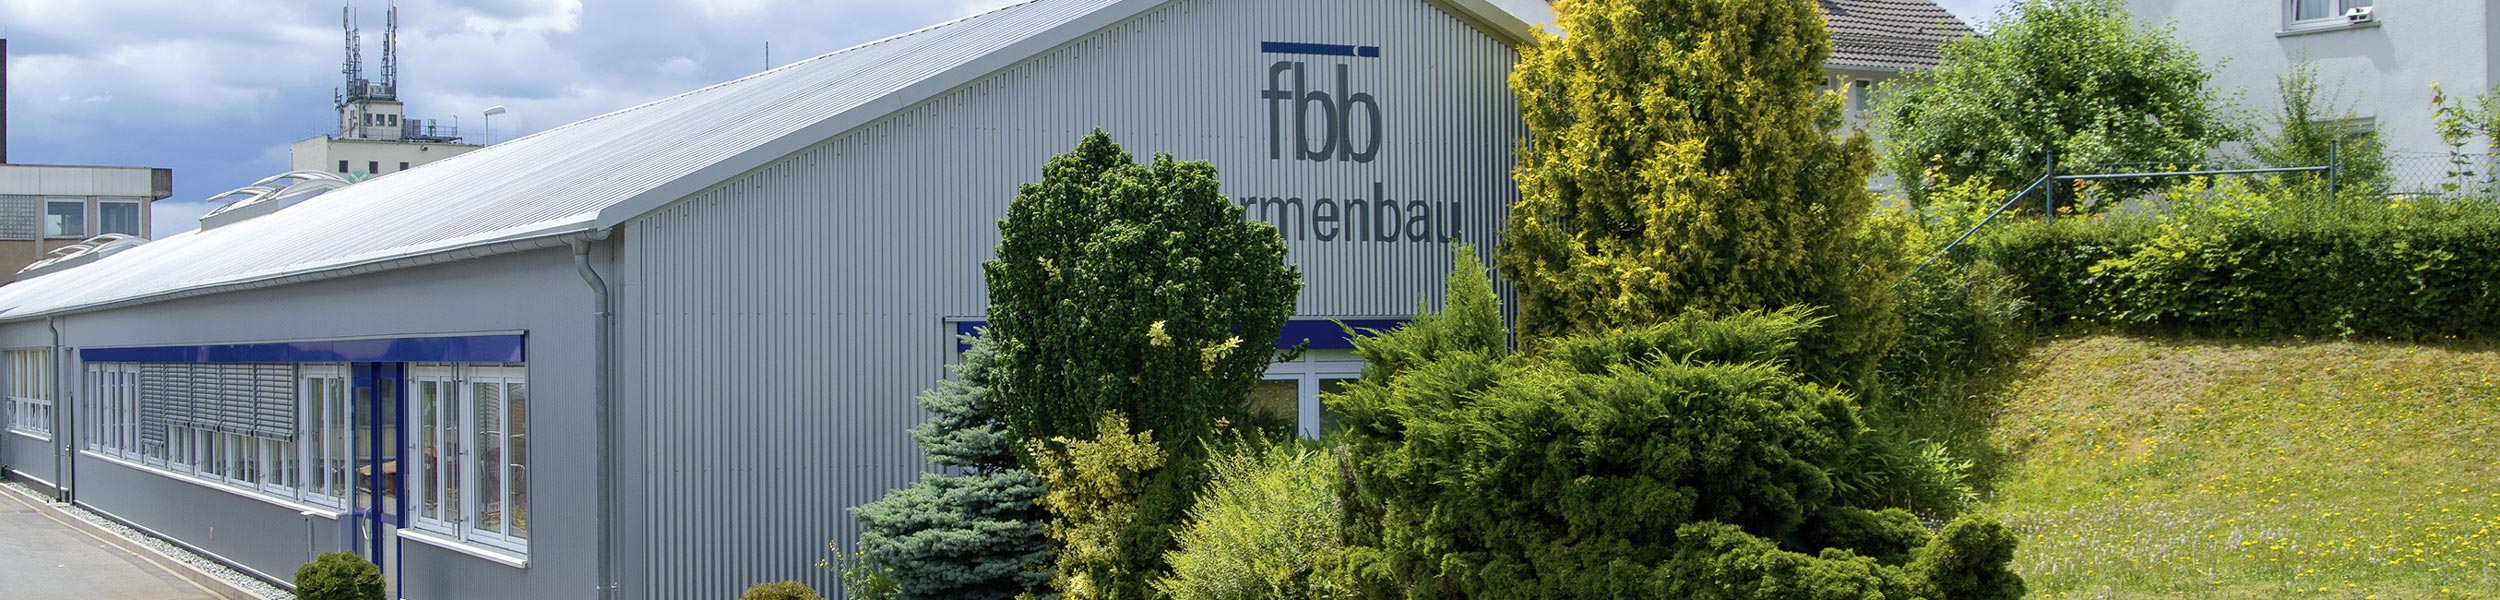 Downloads - FBB Formenbau Buchen GmbH